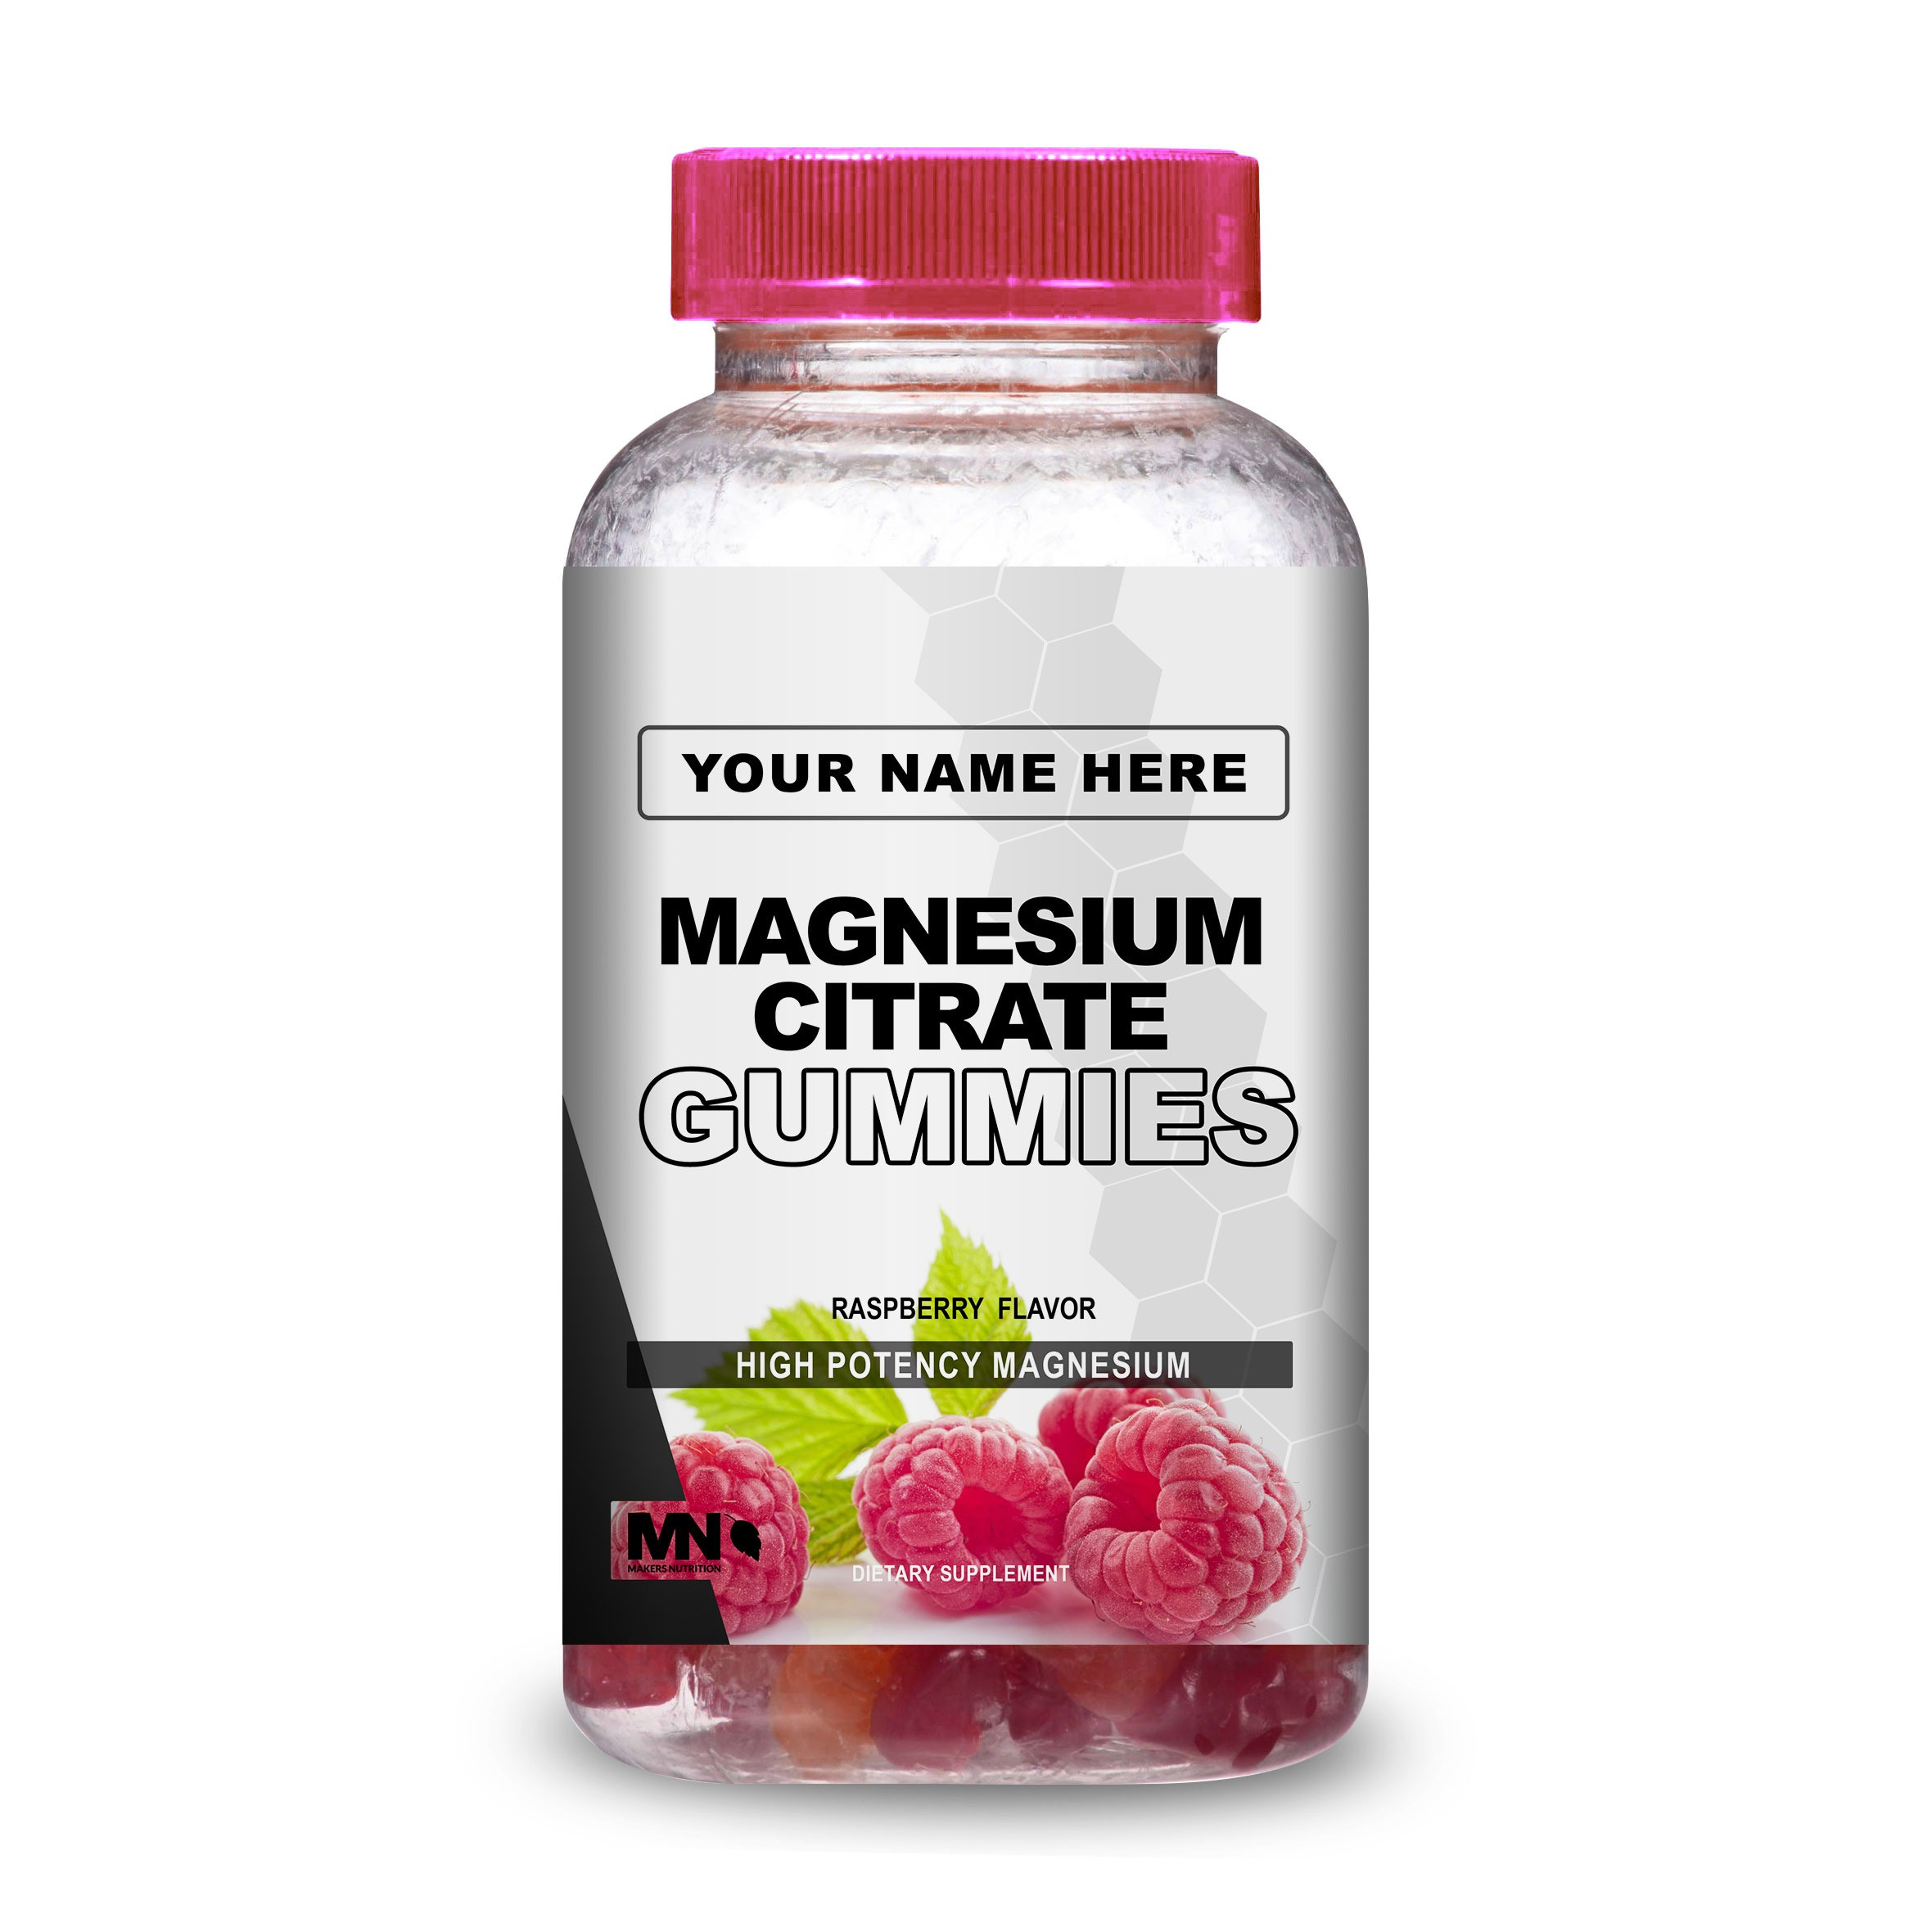 Magnesium Citrate Gummies G069